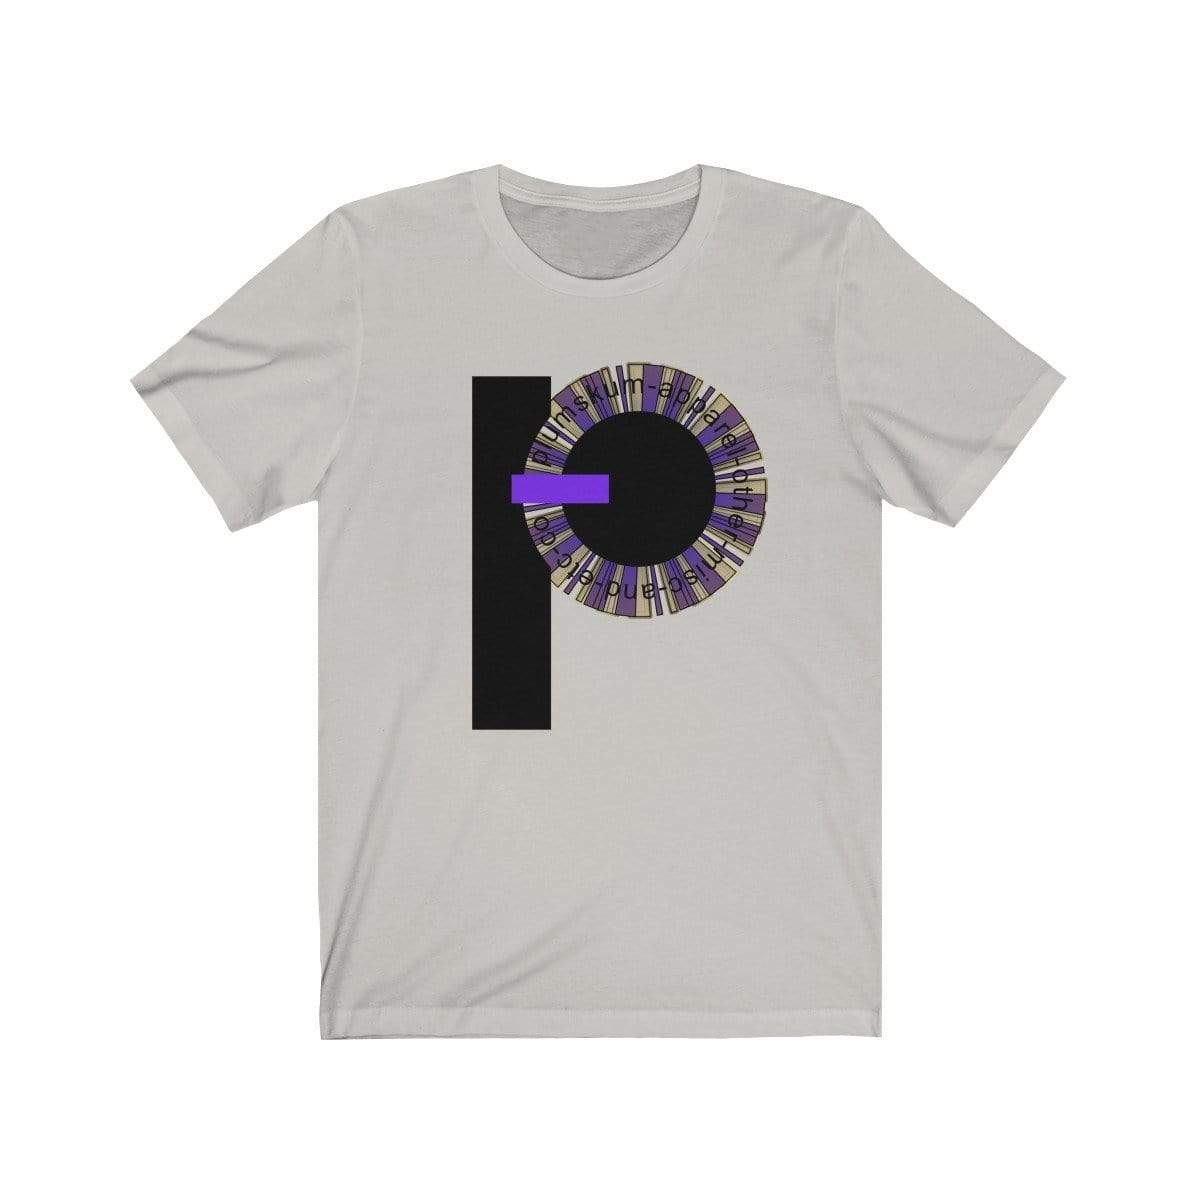 Printify T-Shirt Silver / XS Plumskum Pinwheel Etc. Co. TShirt